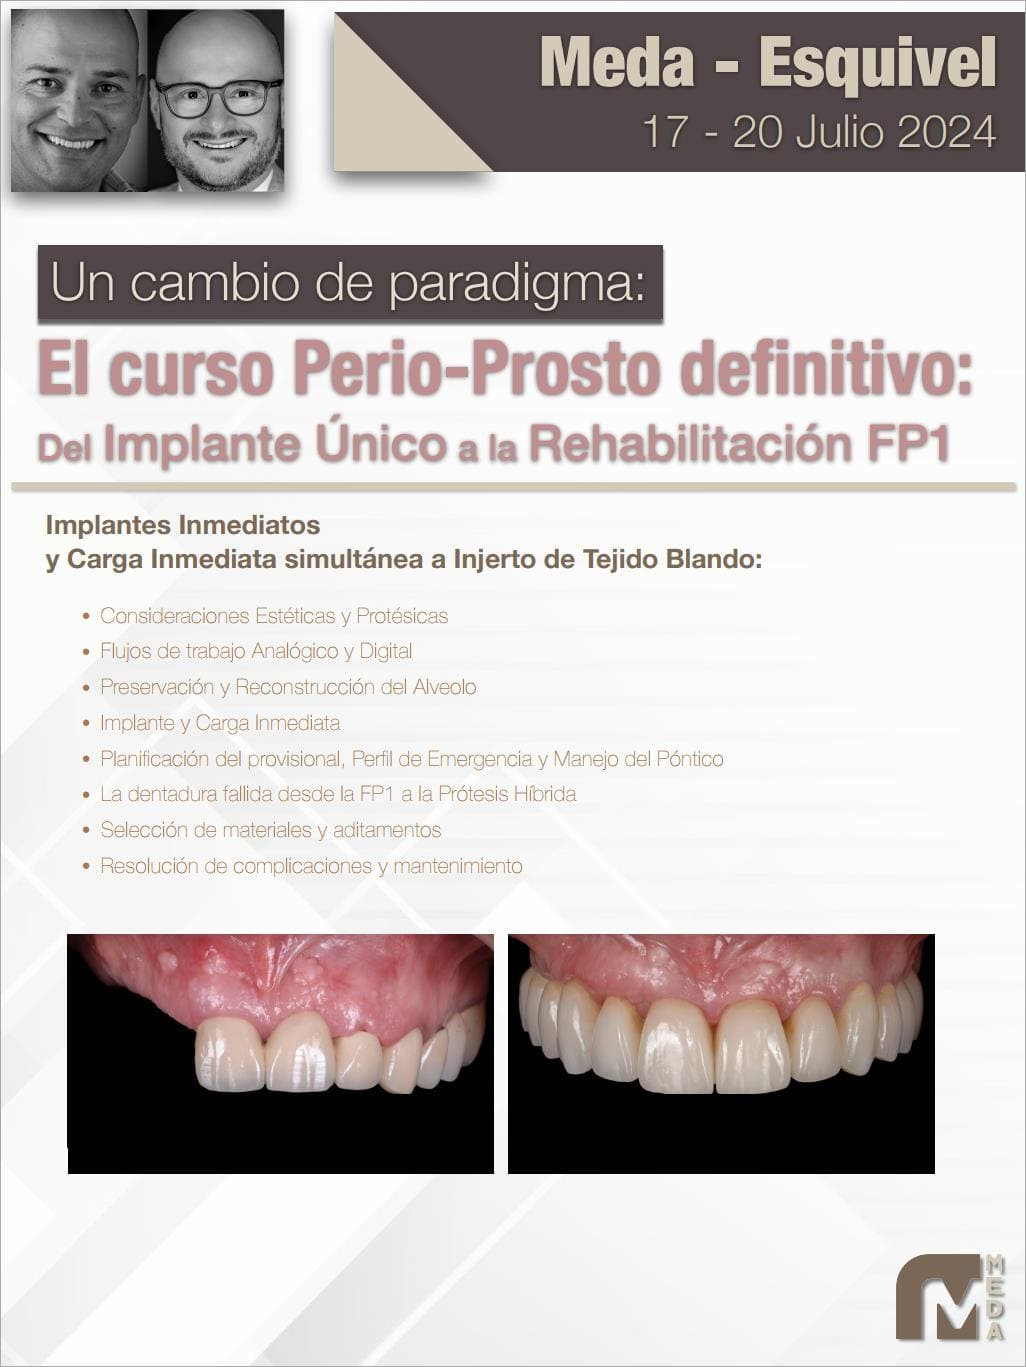 Curso Perio-Prosto Definitivo en Meda Dental Academy edición 2024